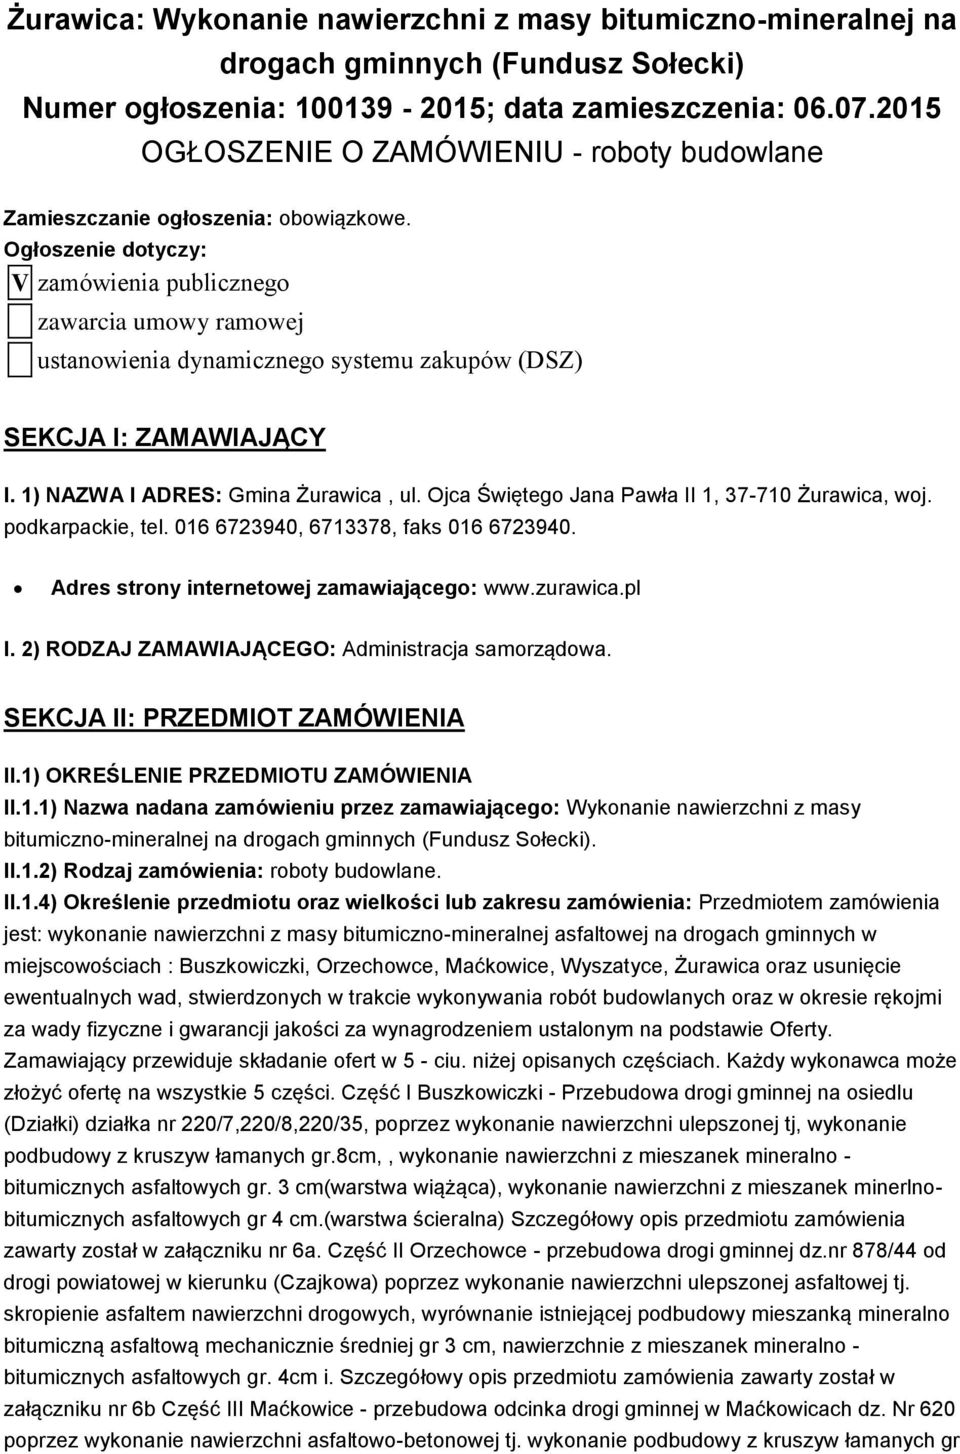 Ogłoszenie dotyczy: V zamówienia publicznego zawarcia umowy ramowej ustanowienia dynamicznego systemu zakupów (DSZ) SEKCJA I: ZAMAWIAJĄCY I. 1) NAZWA I ADRES: Gmina Żurawica, ul.